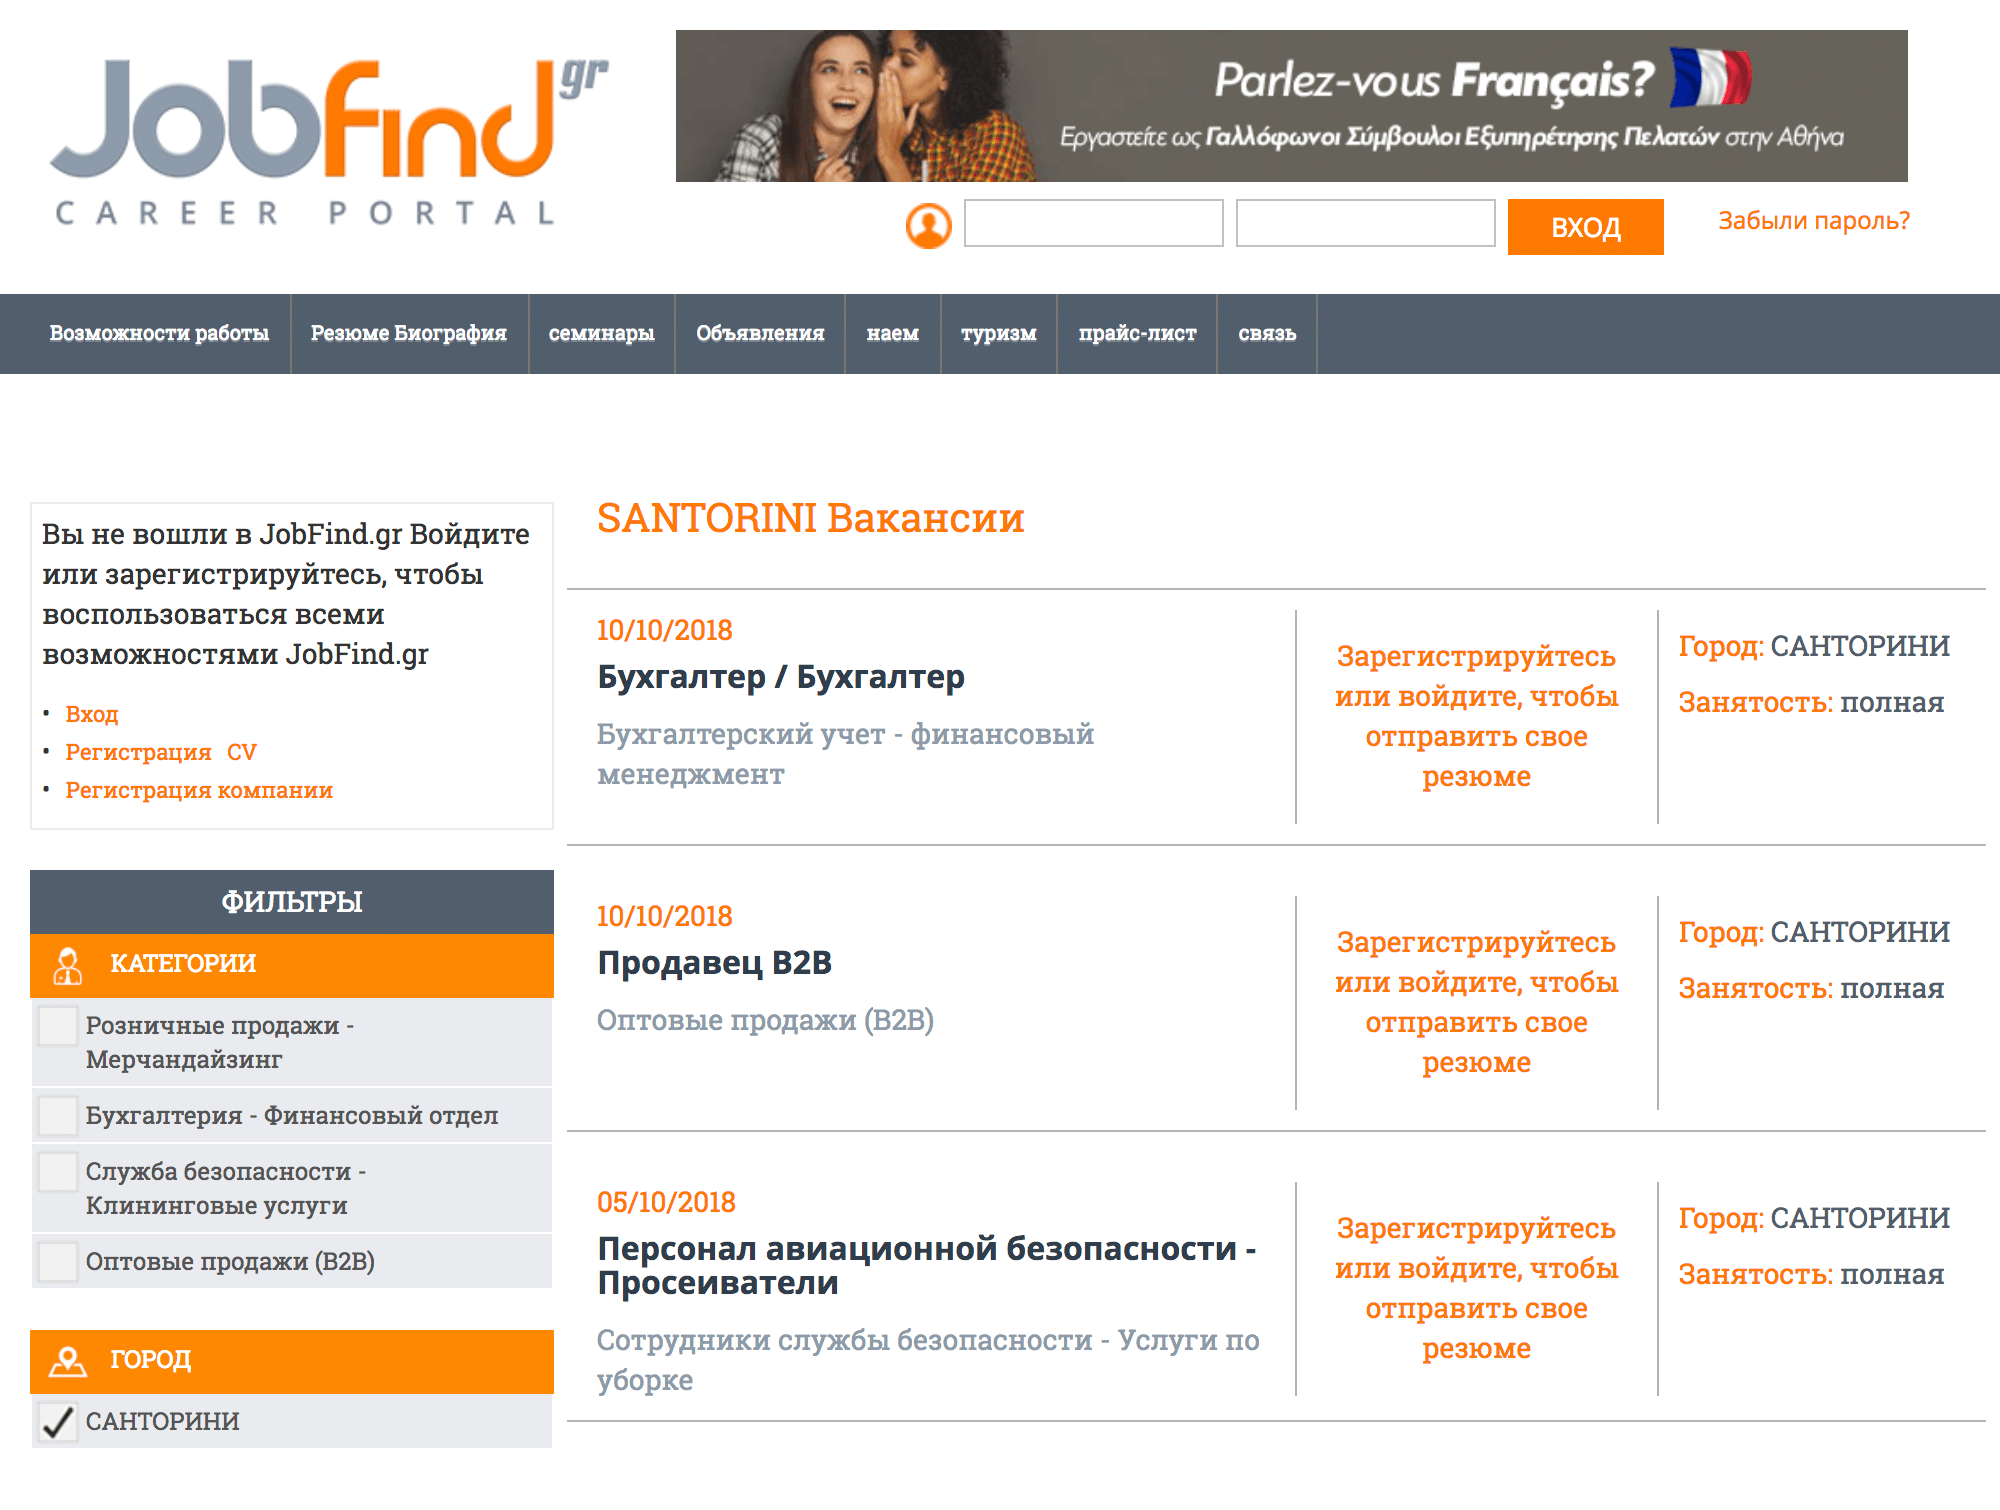 Один из популярных сайтов для поиска работы в Греции, в частности на Санторини